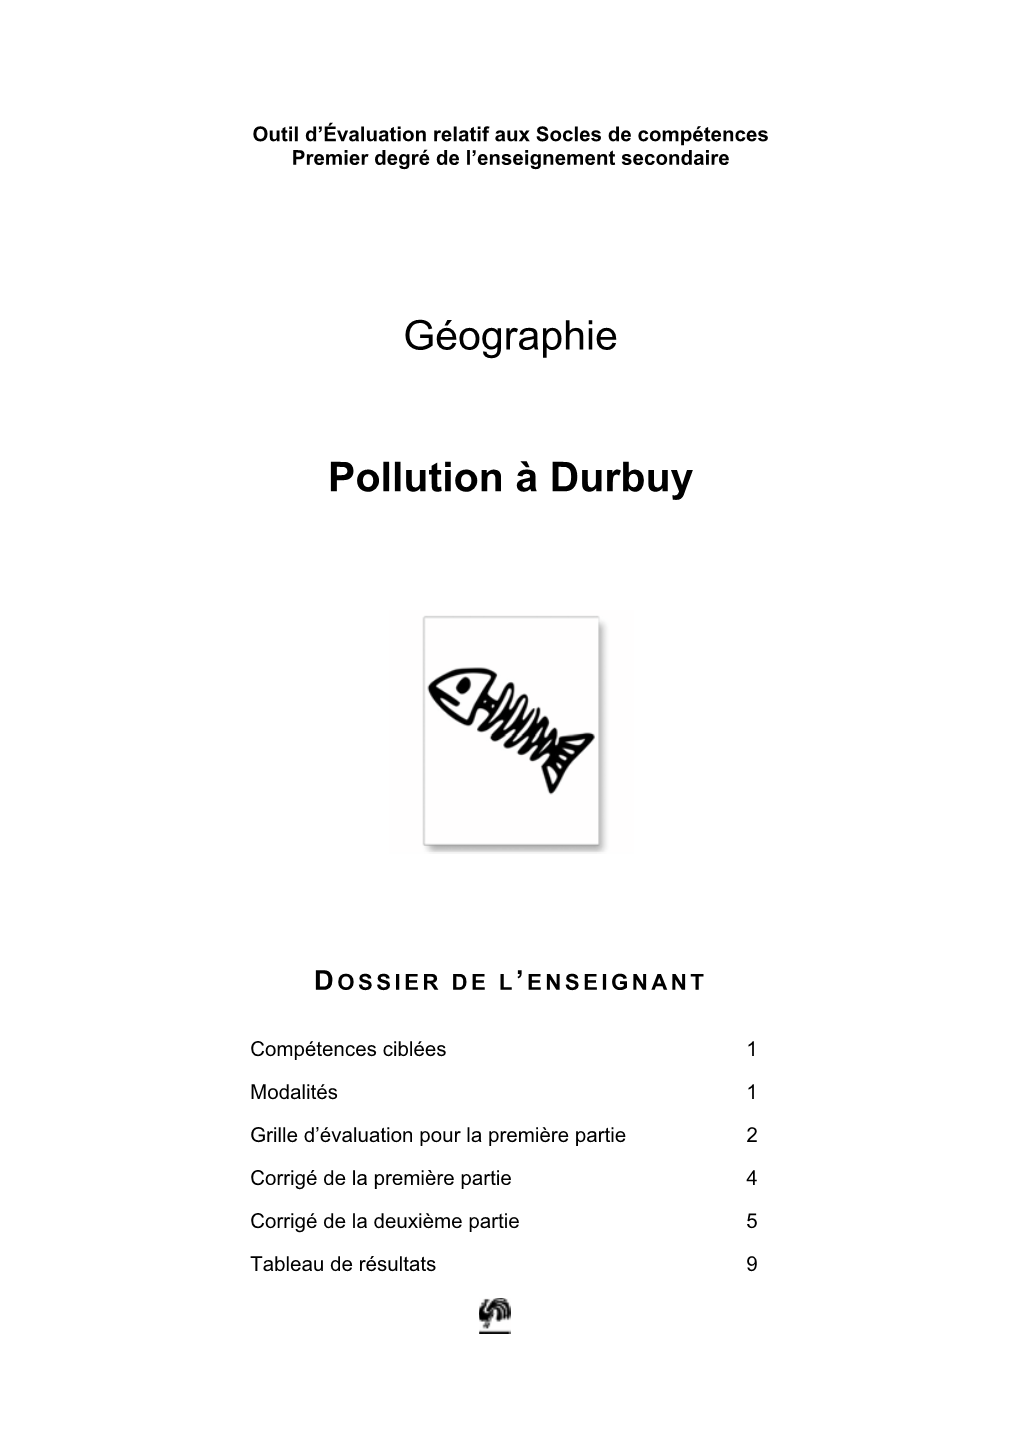 Géographie Pollution À Durbuy